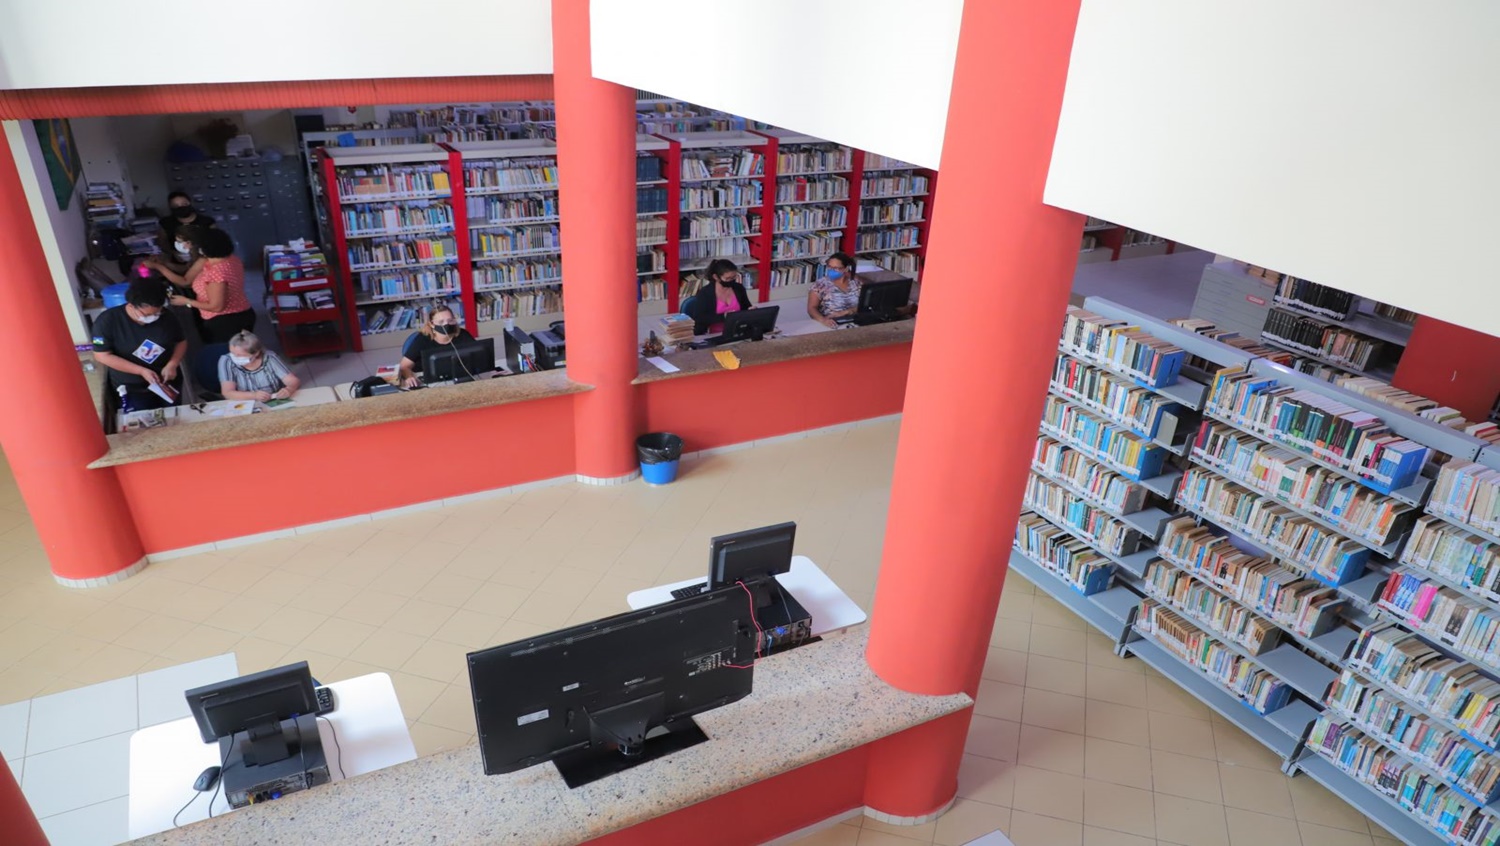 CONFORTO: Biblioteca Francisco Meirelles será reaberta com novidades para os usuários